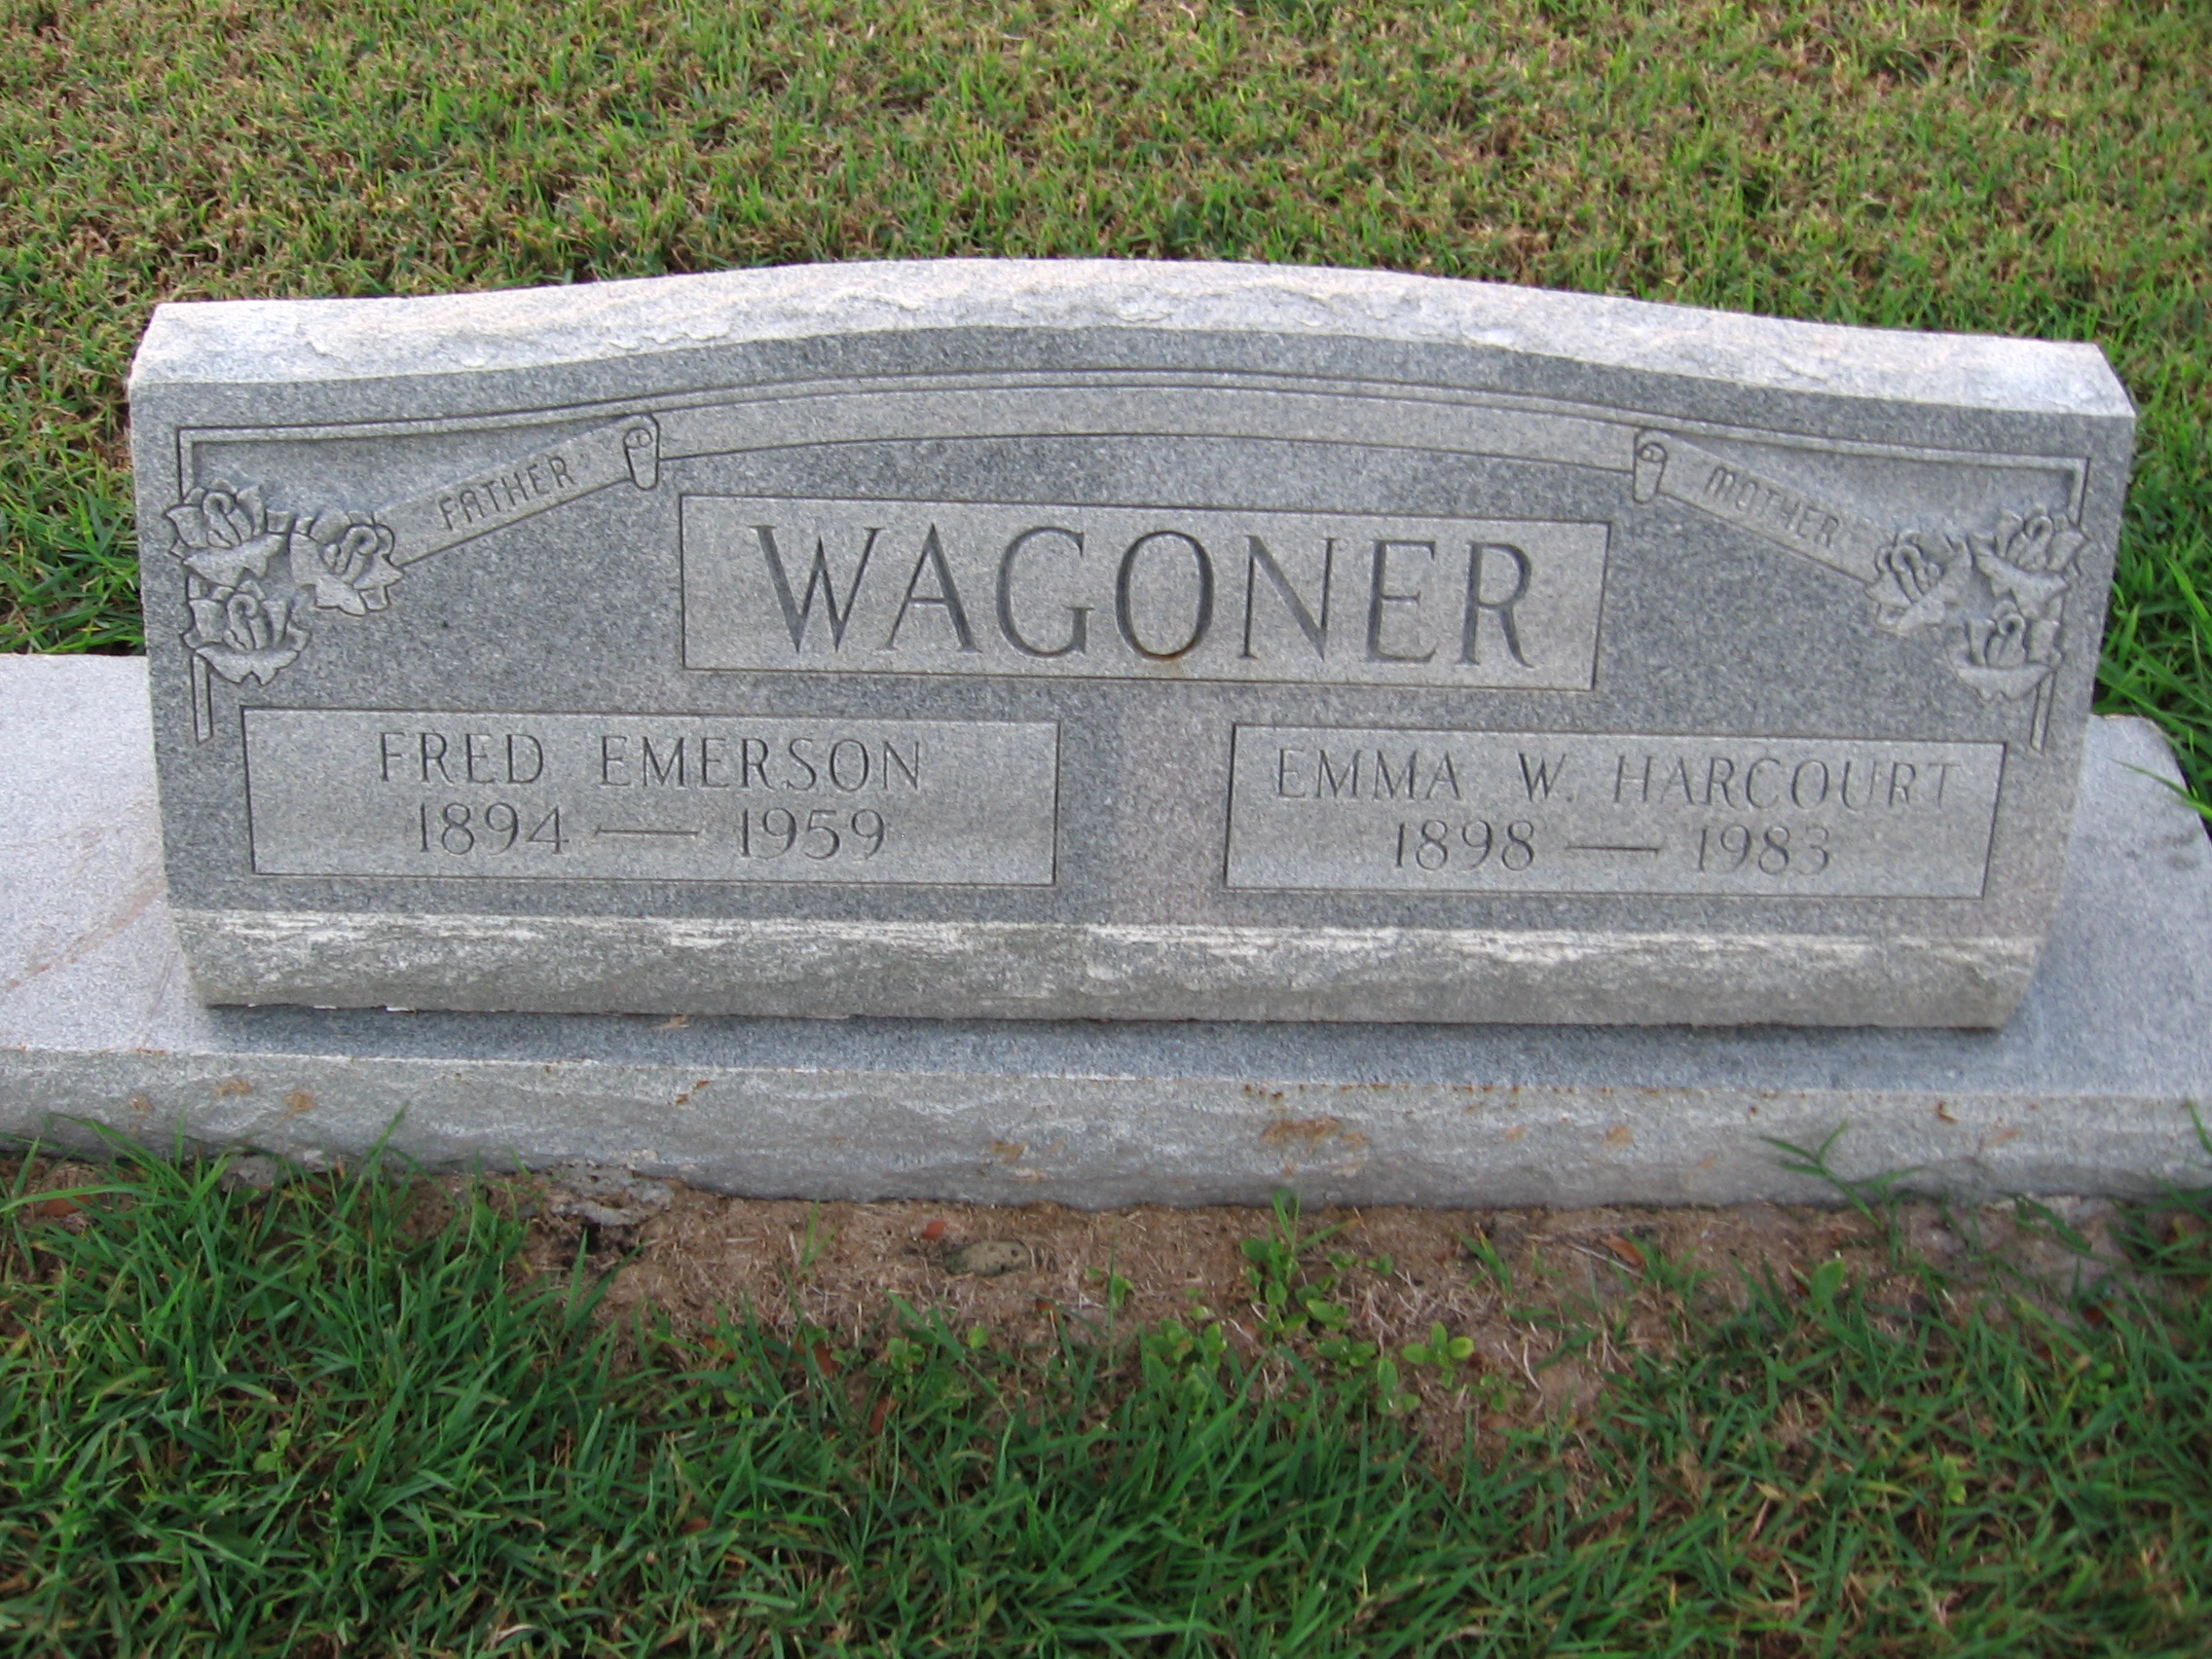 Fred Emerson Wagoner